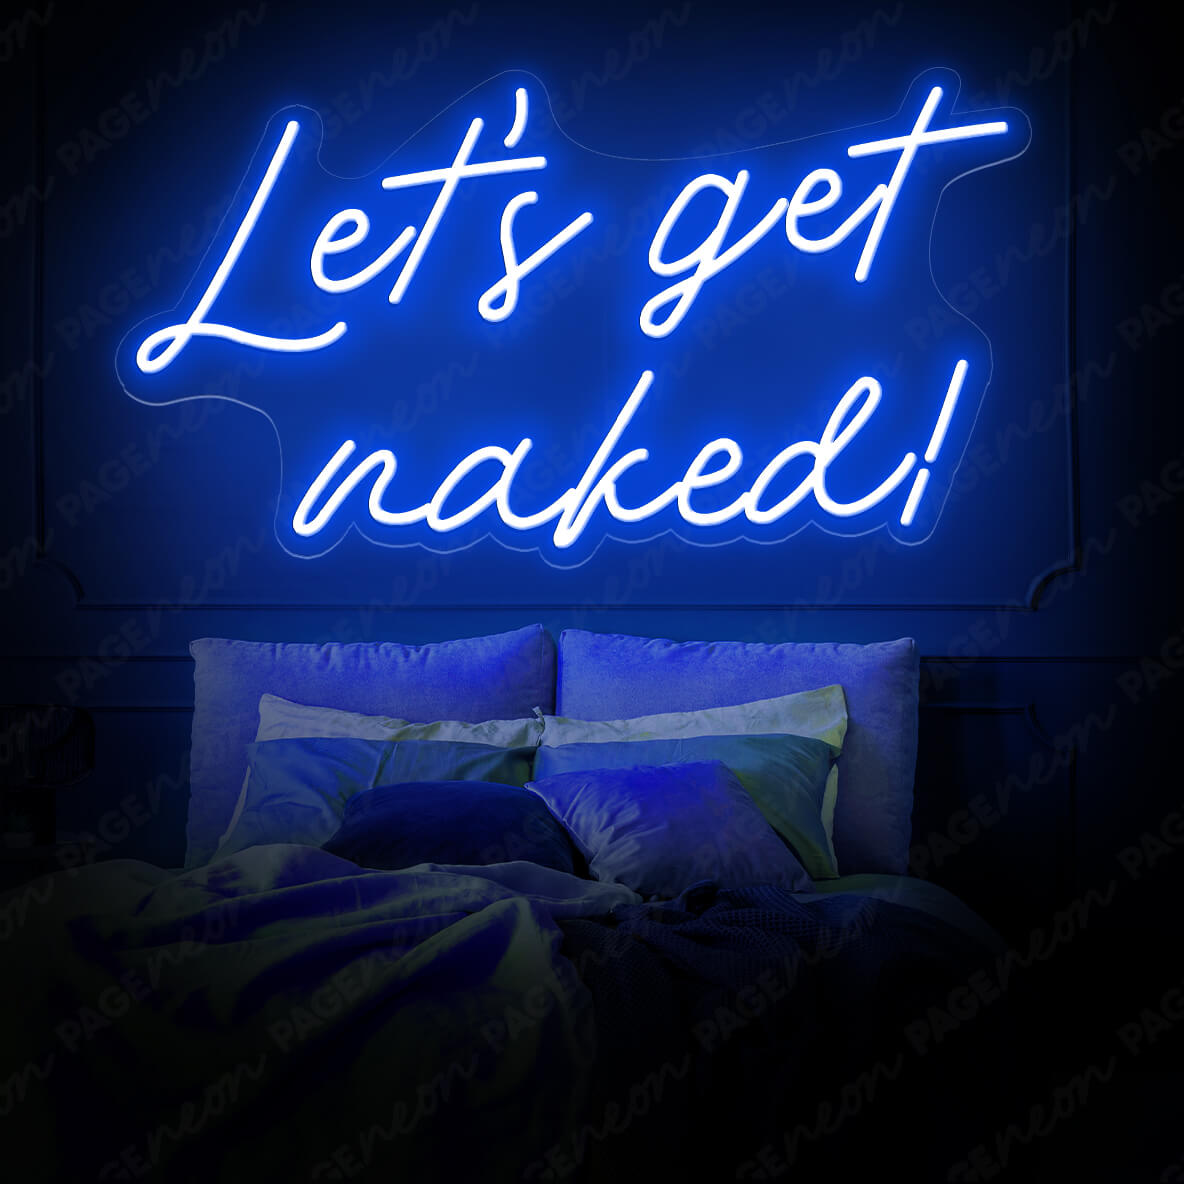 Let's Get Naked Neon Sign Man Cave Led Light Blue